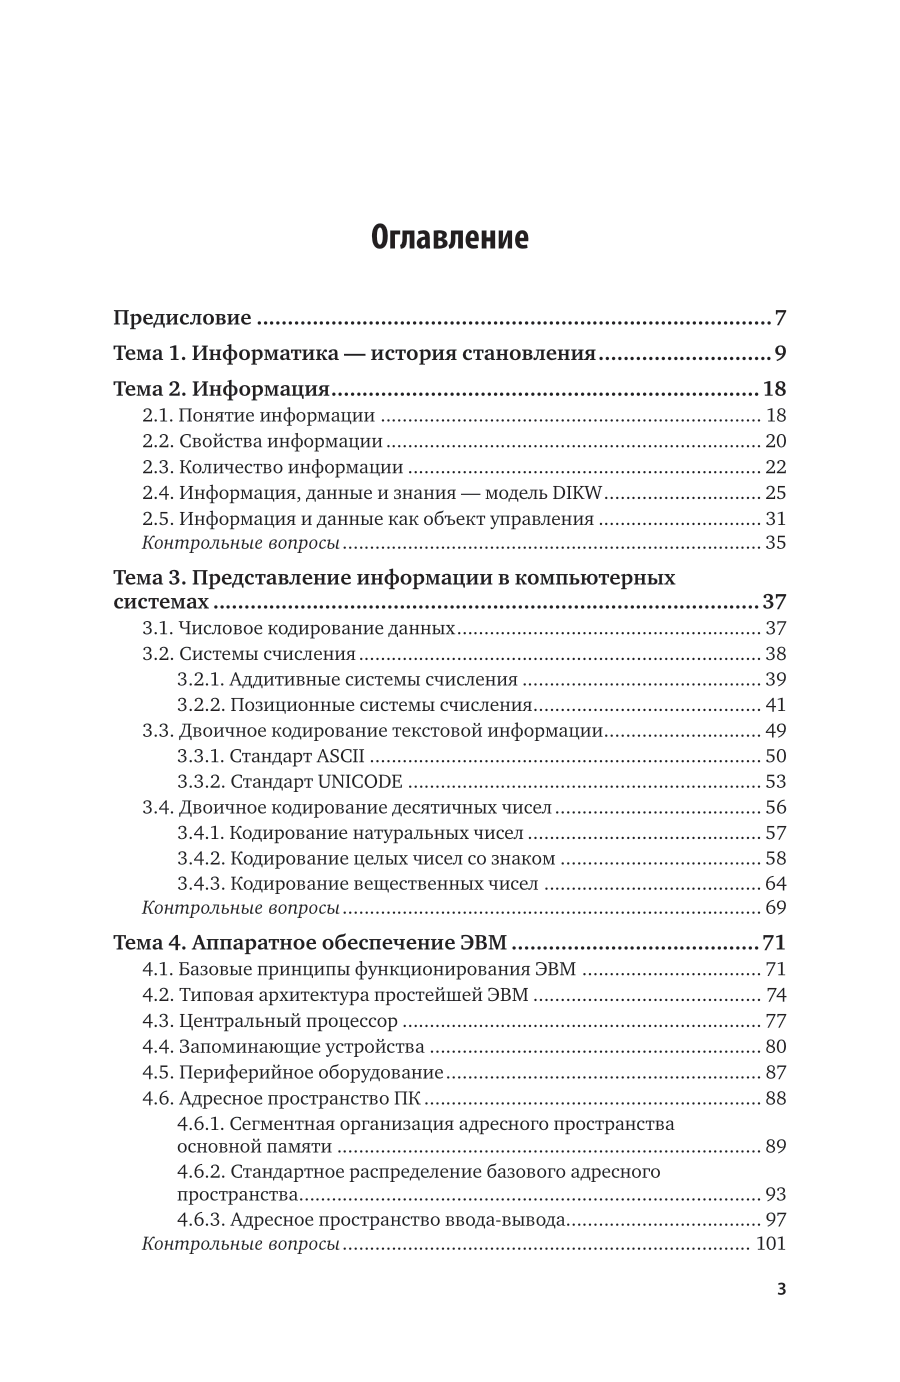 Информатика 2-е изд., пер. и доп. Учебное пособие для вузов - фото №4